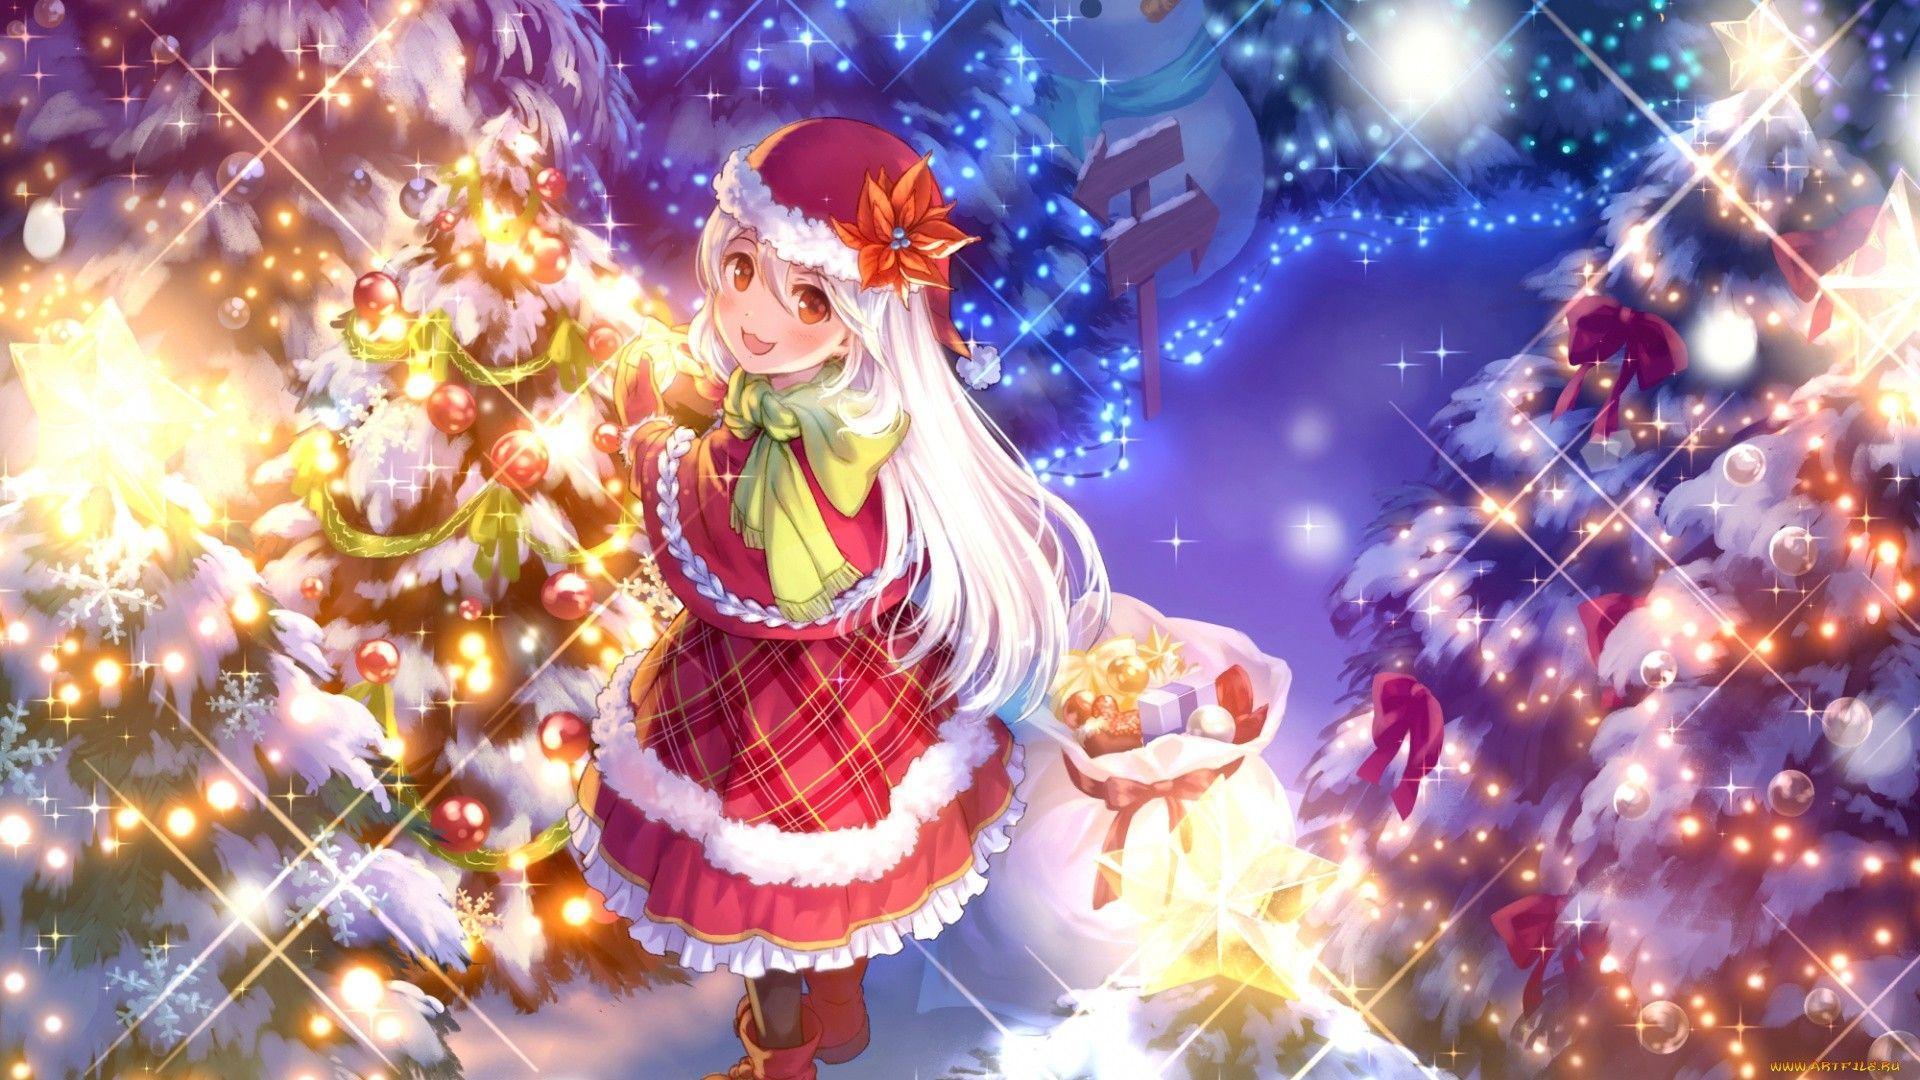 Thật thú vị khi được ngắm nhìn tường hình nền anime đầy dễ thương của một cô gái Giáng sinh. Bạn sẽ không thể rời mắt khỏi vẻ đẹp và cảm giác ấm áp mà chúng mang lại. Hãy click vào hình để khám phá nét độc đáo của anime girl này.